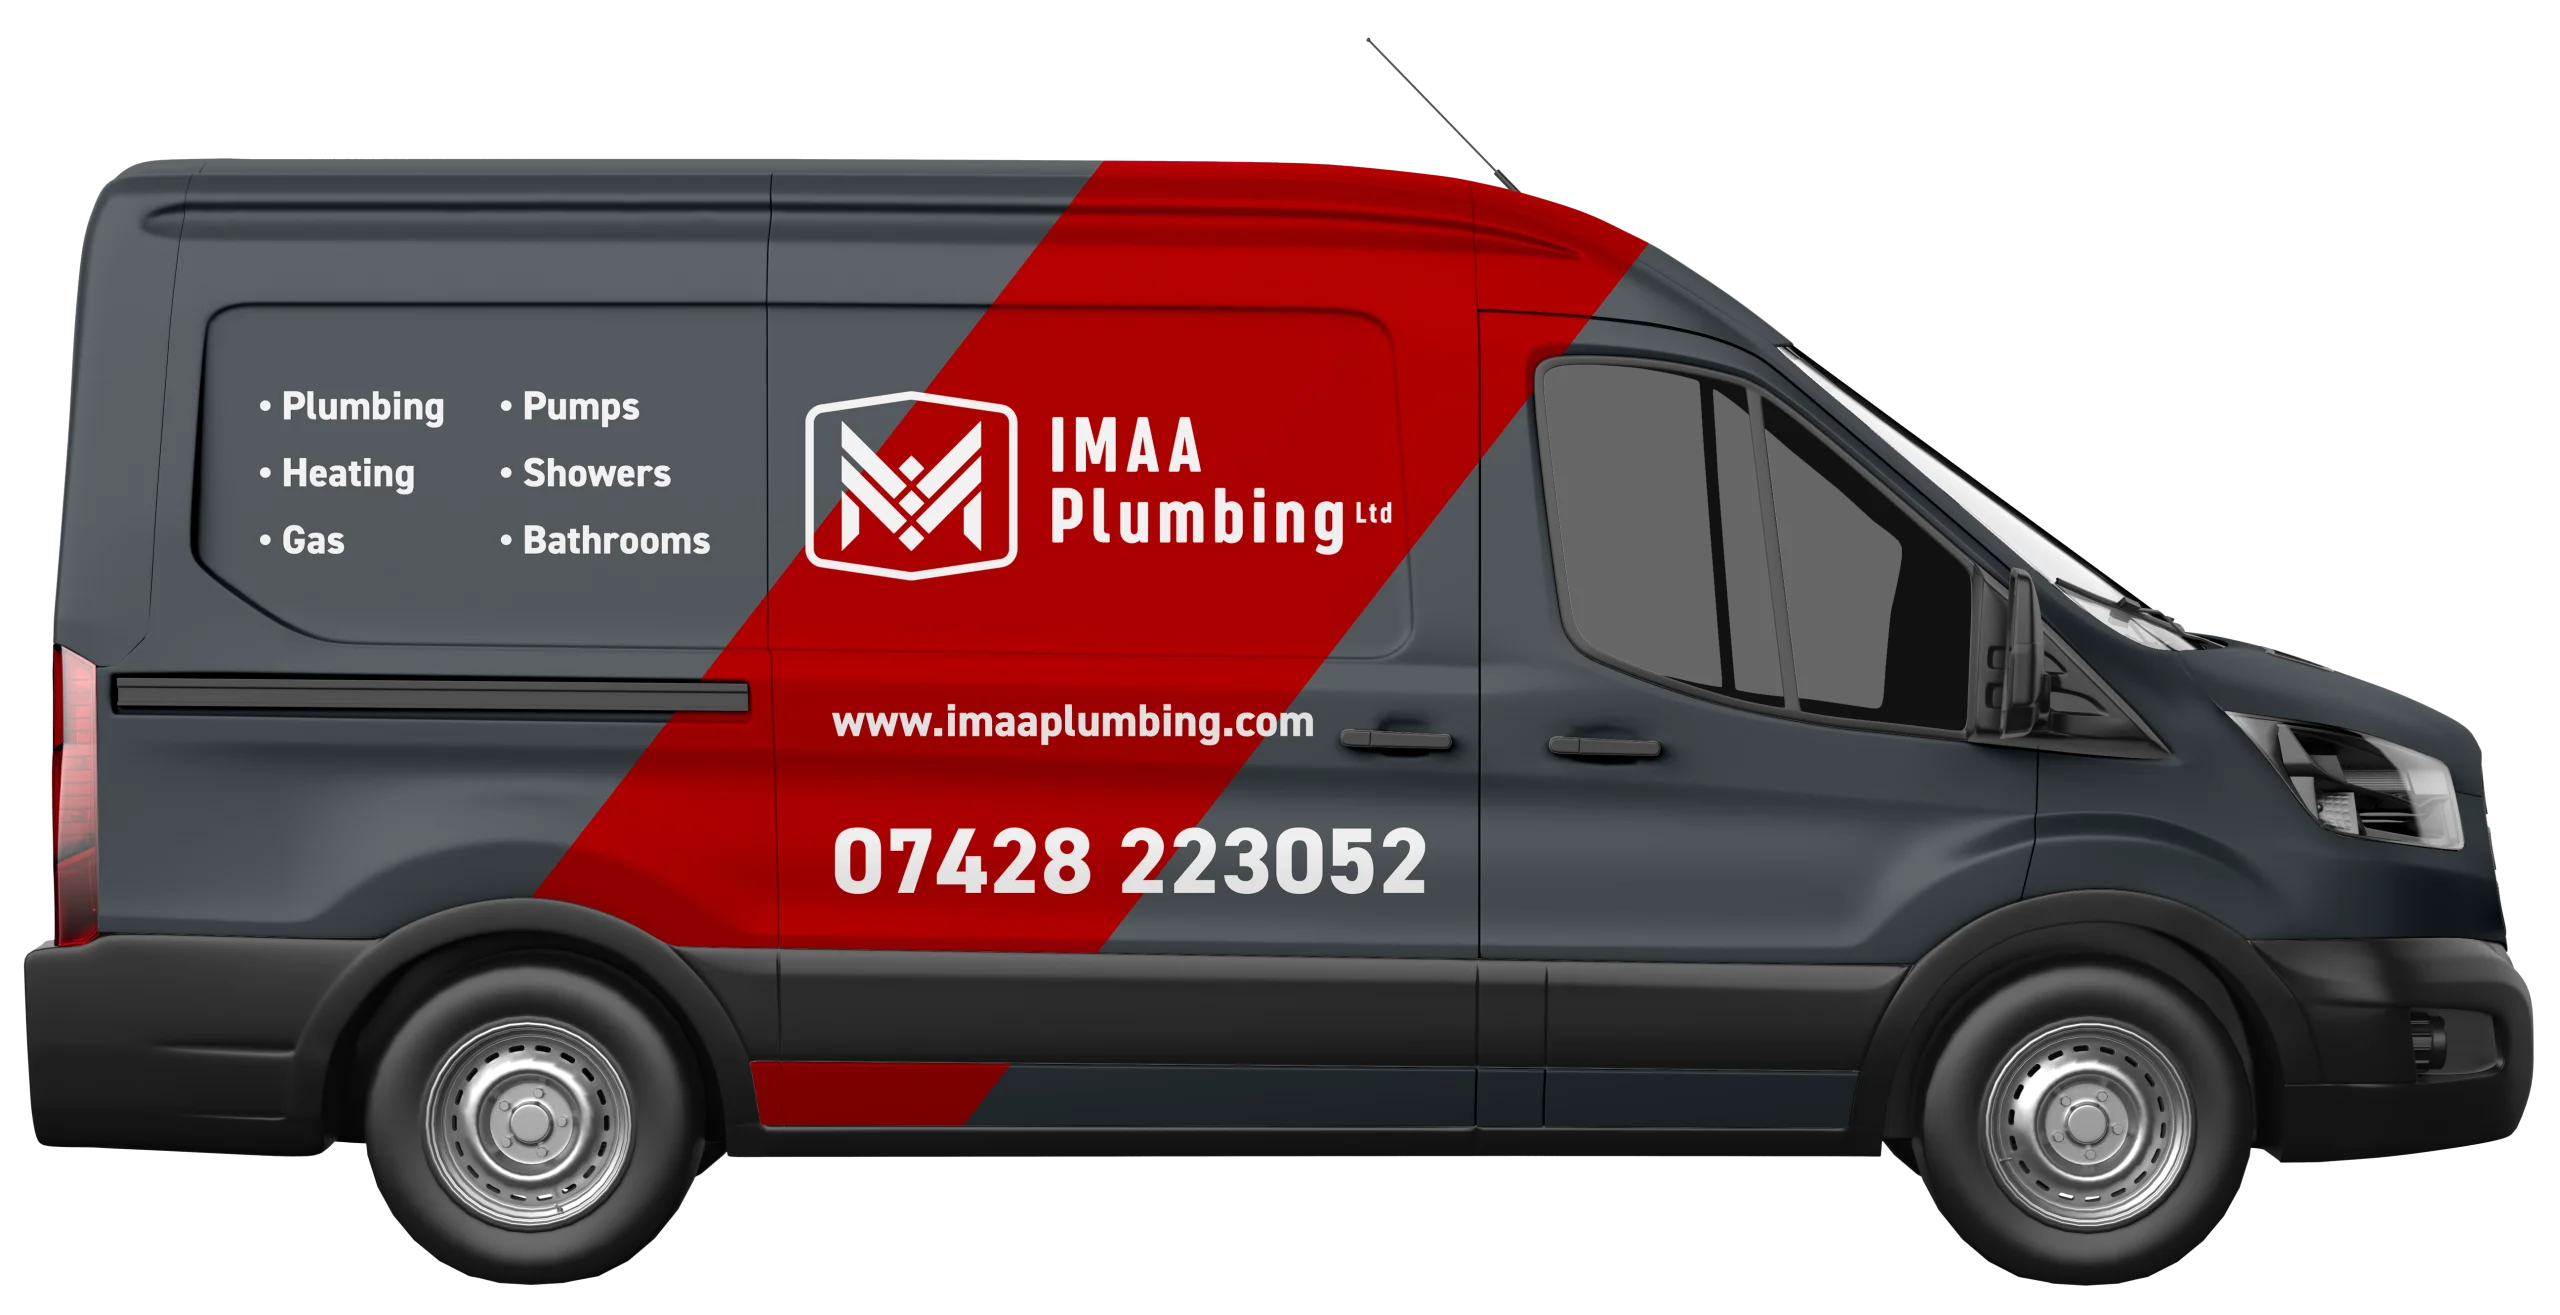 imaa plumbing - van. London's No.1 plumbing company